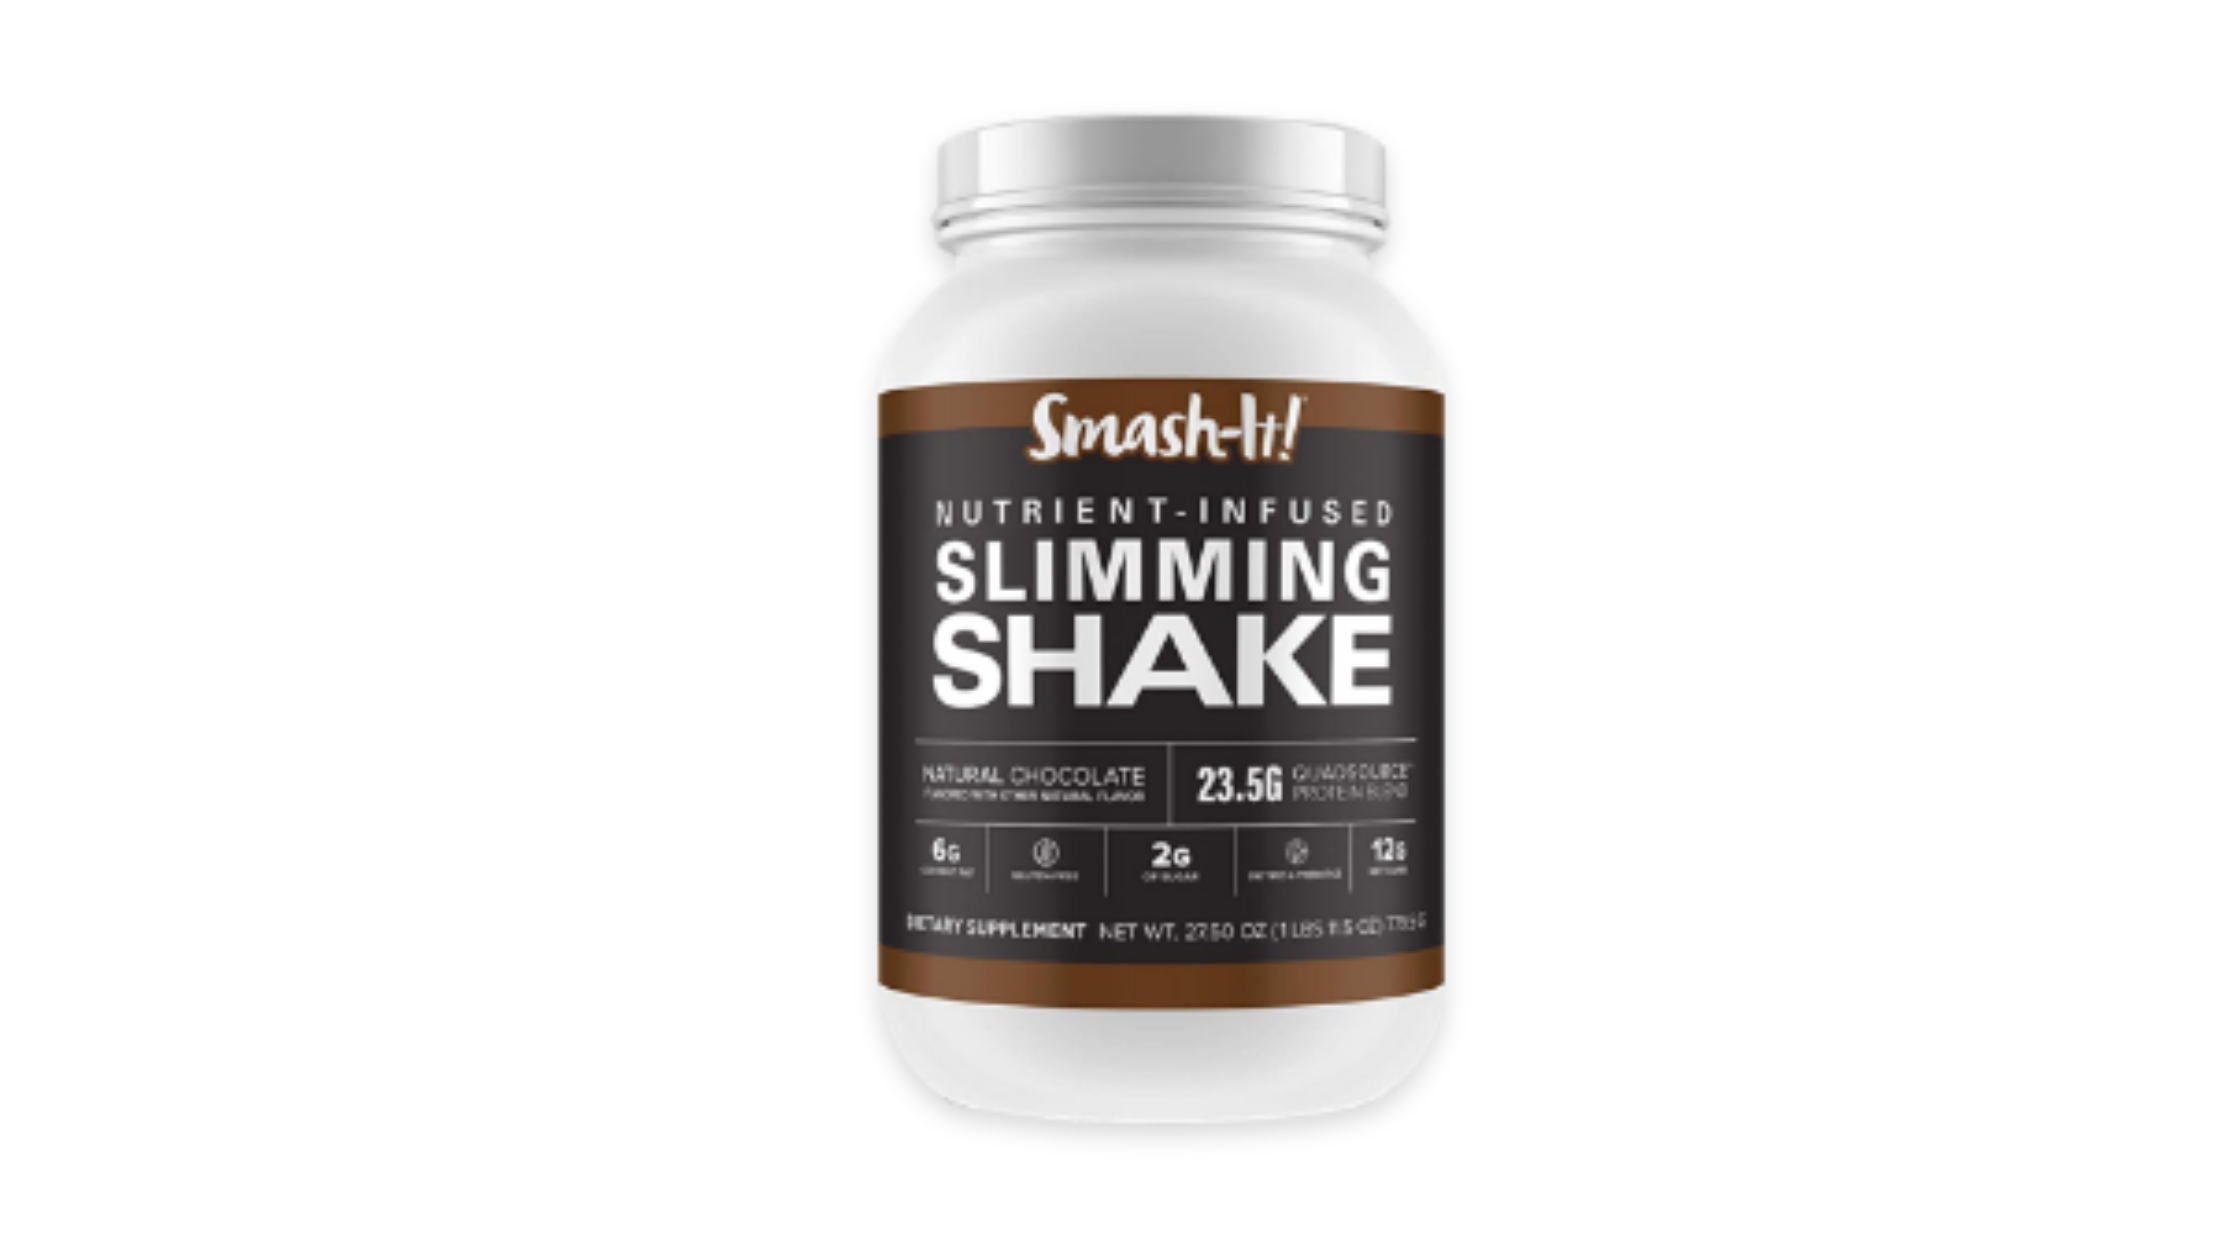 Smash-It! Slimming Shake Reviews